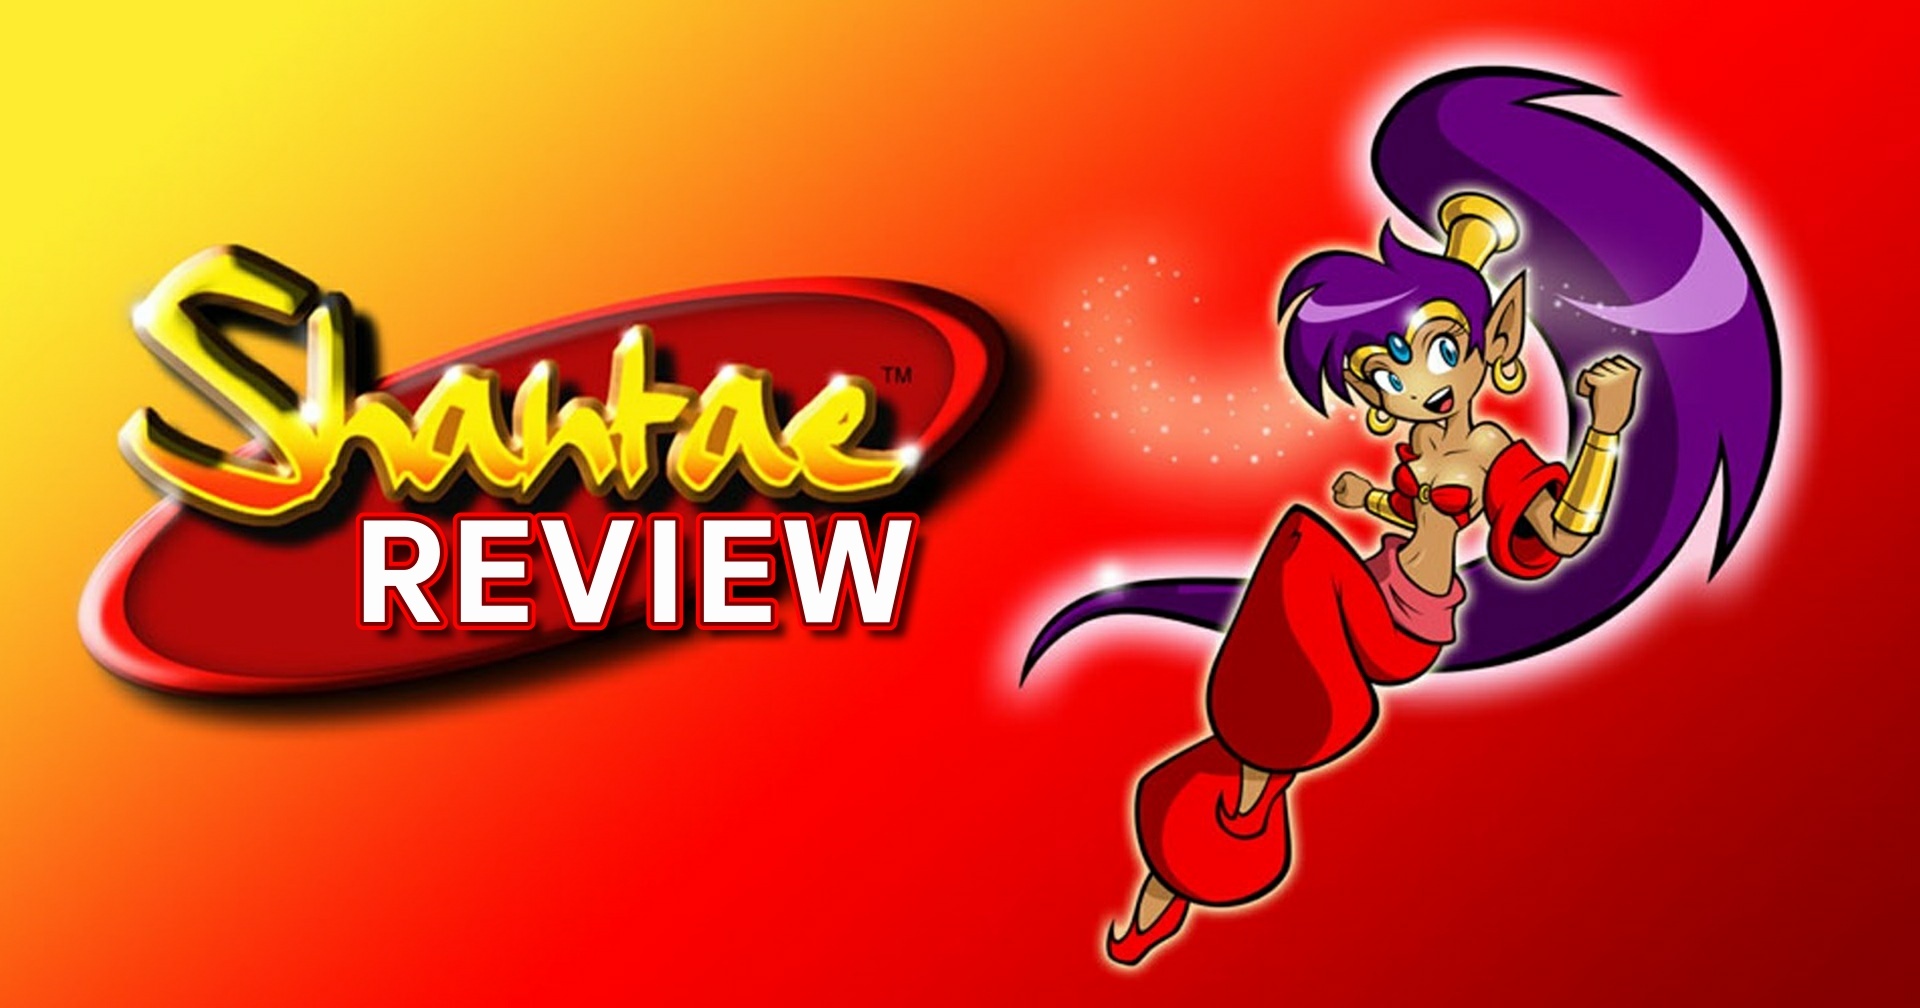 [รีวิวเกม] Shantae ต้นฉบับแอ็กชันคลาสสิกบนเกมบอยกลับมาบน Nintendo Switch